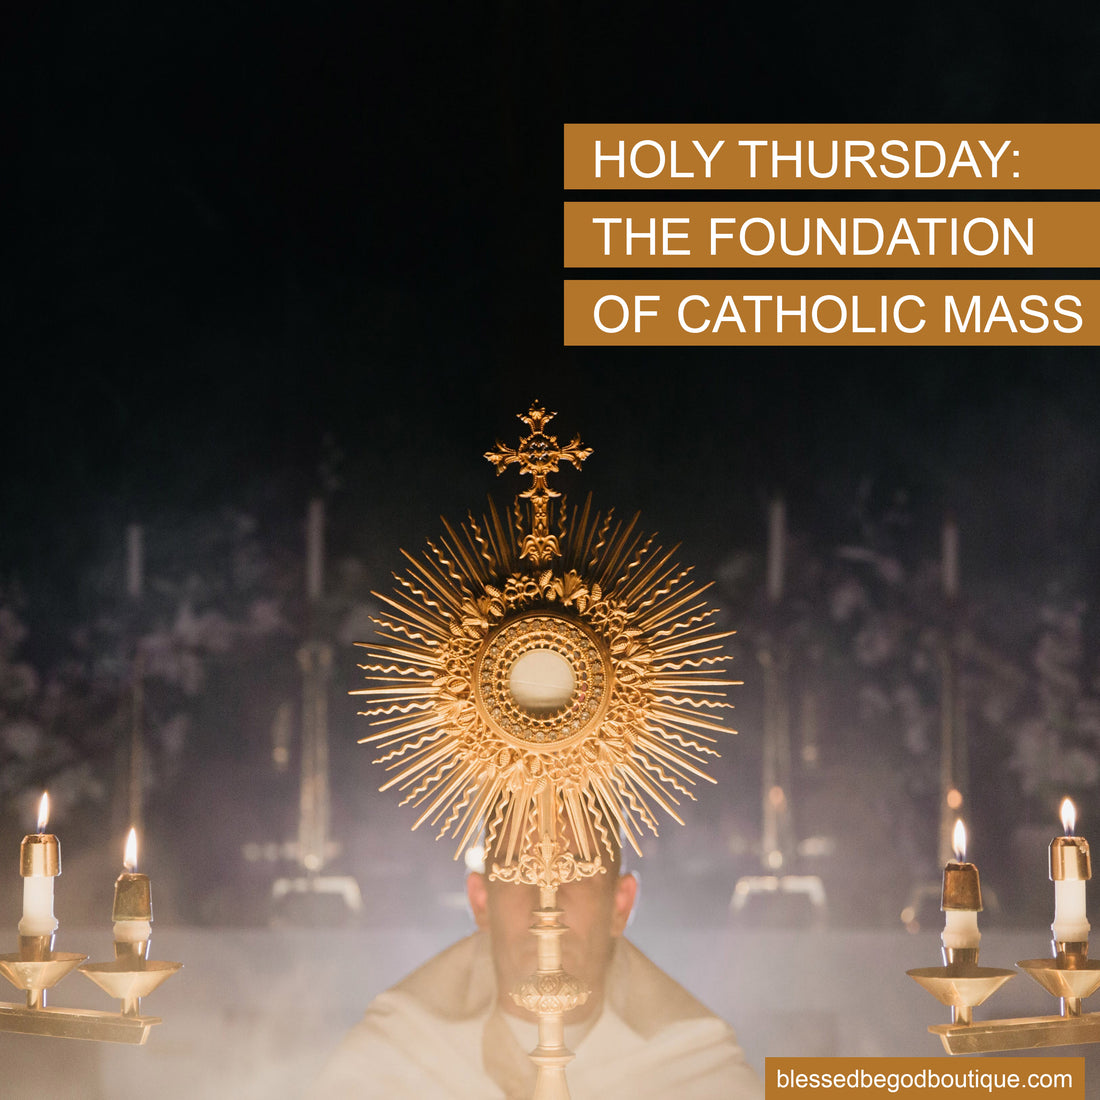 Holy Thursday: The Foundation of Catholic Mass – blessedbegodboutique